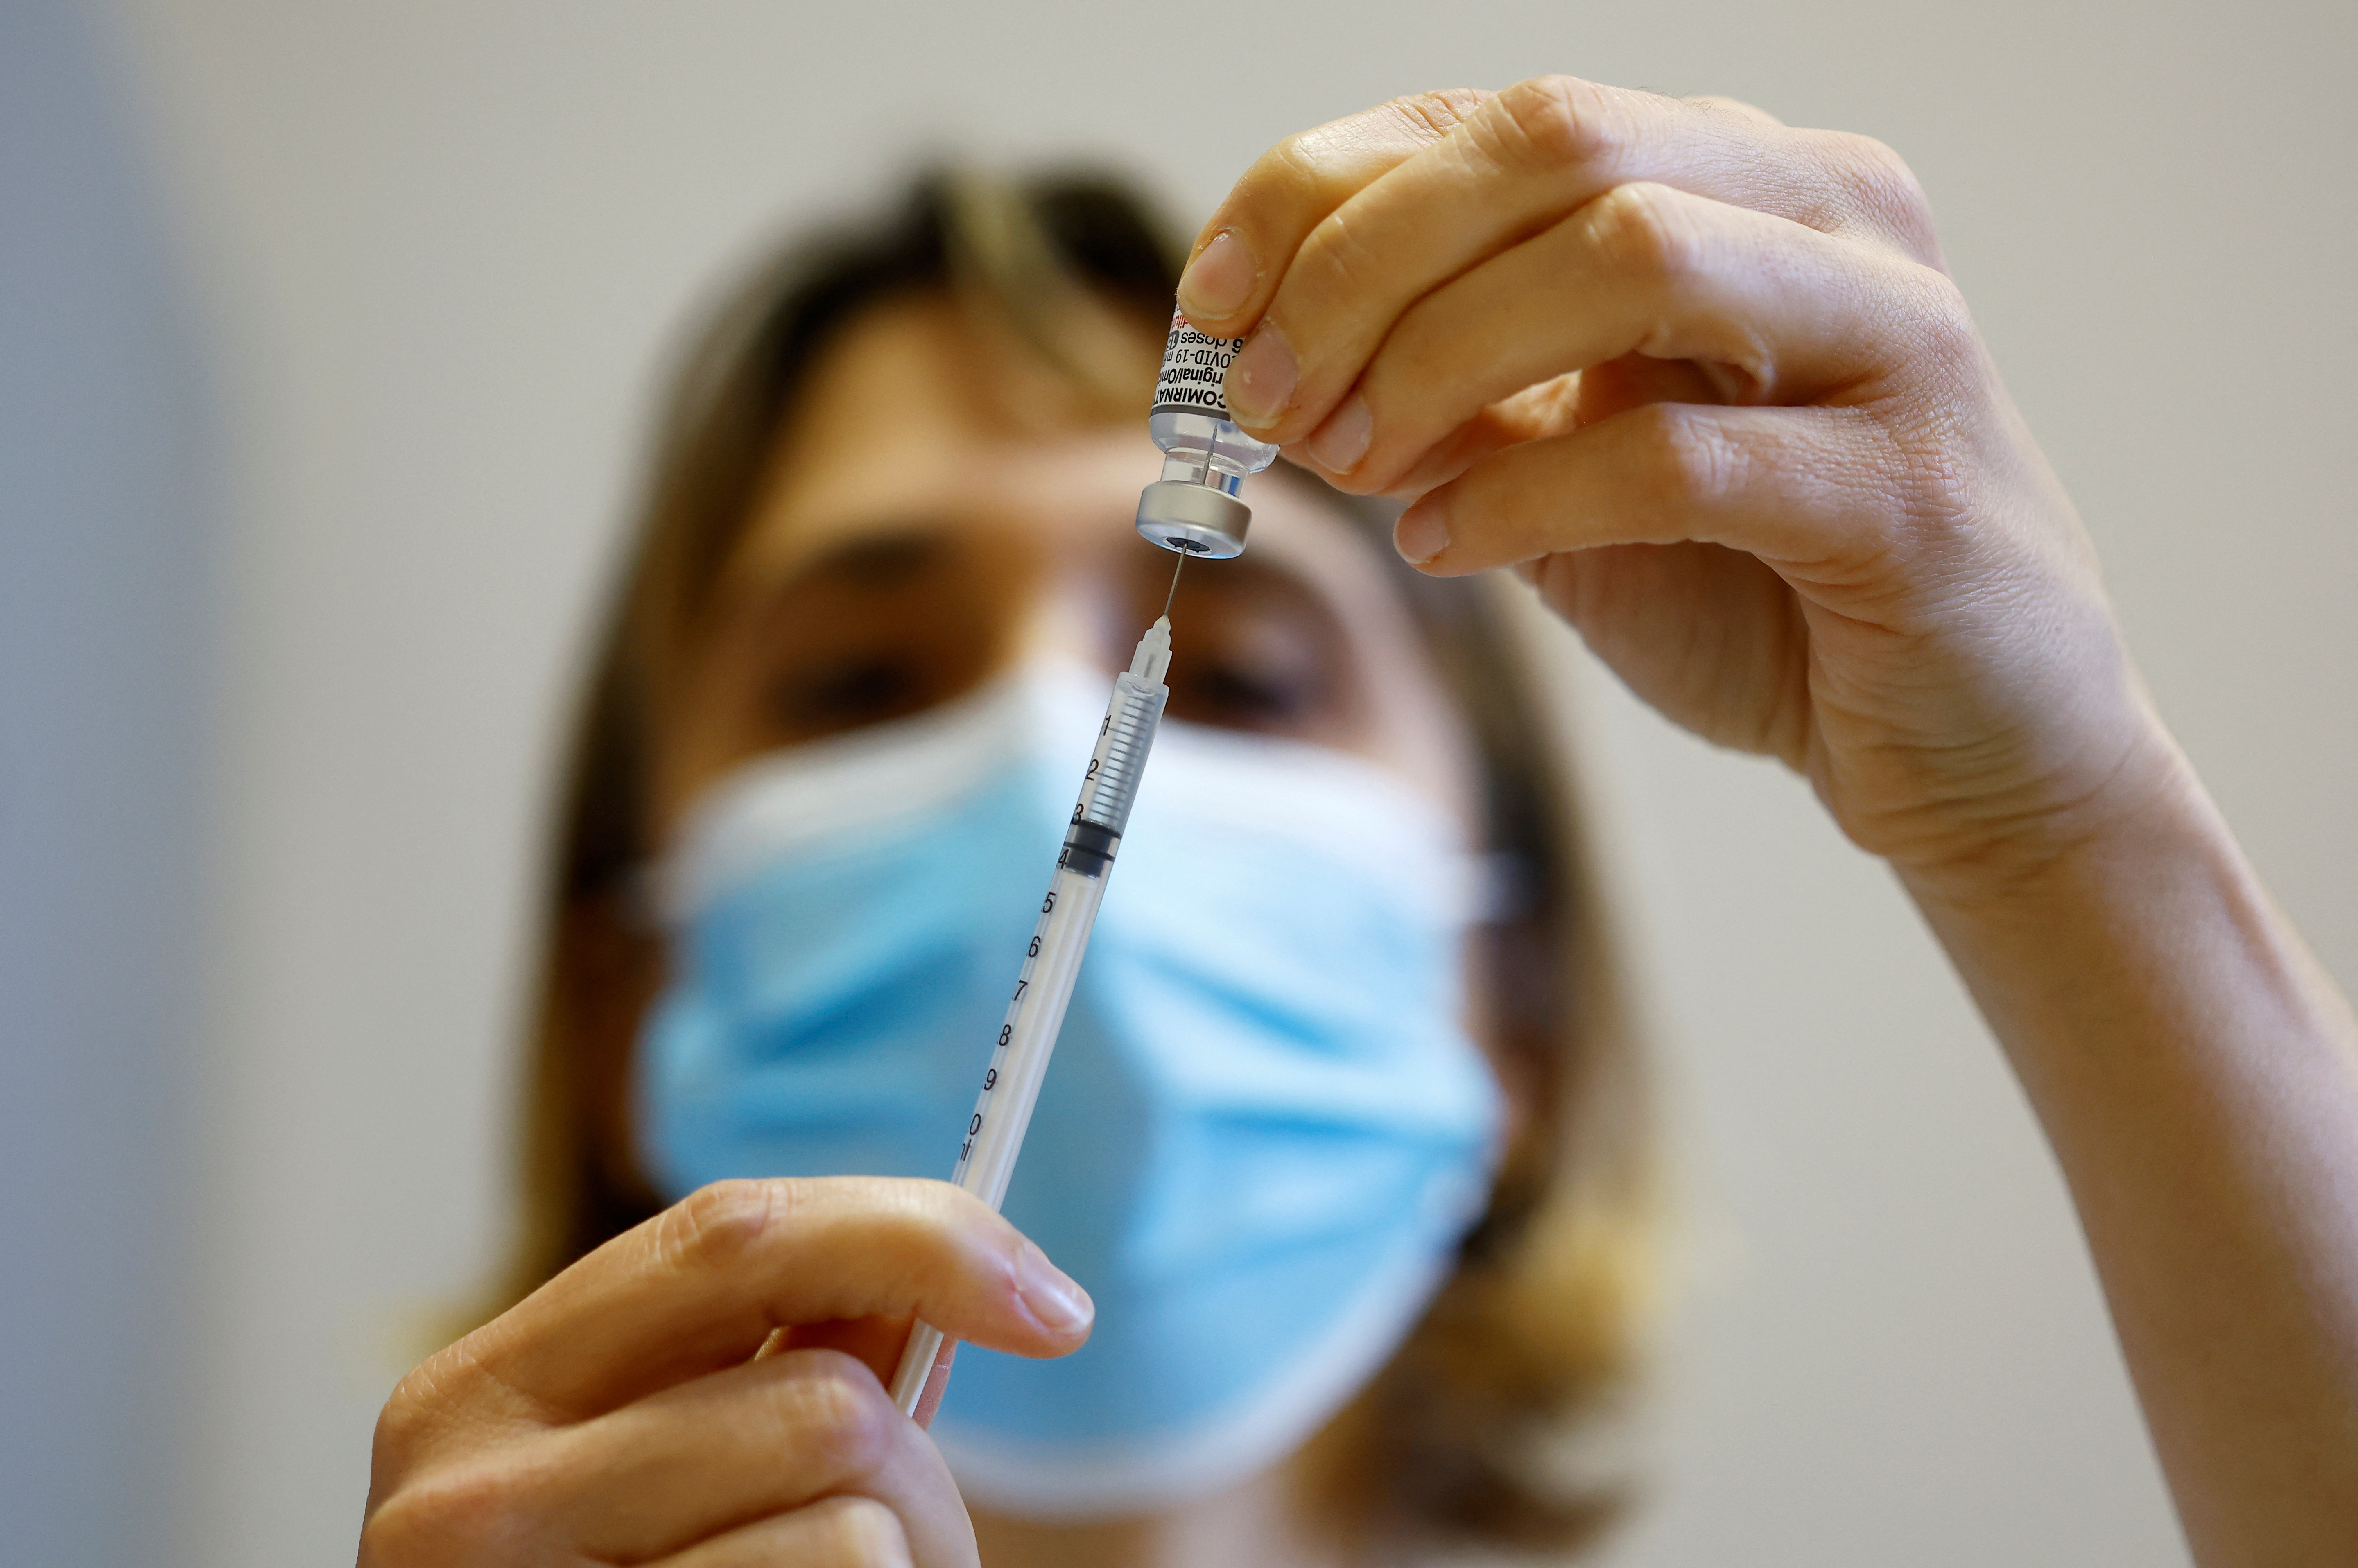 Desde el inicio del plan de vacunación contra el COVID en 2020, se aplicaron dosis de vacunas monovalentes. Son dosis contra la cepa ancestral del coronavirus/ REUTERS/Eric Gaillard